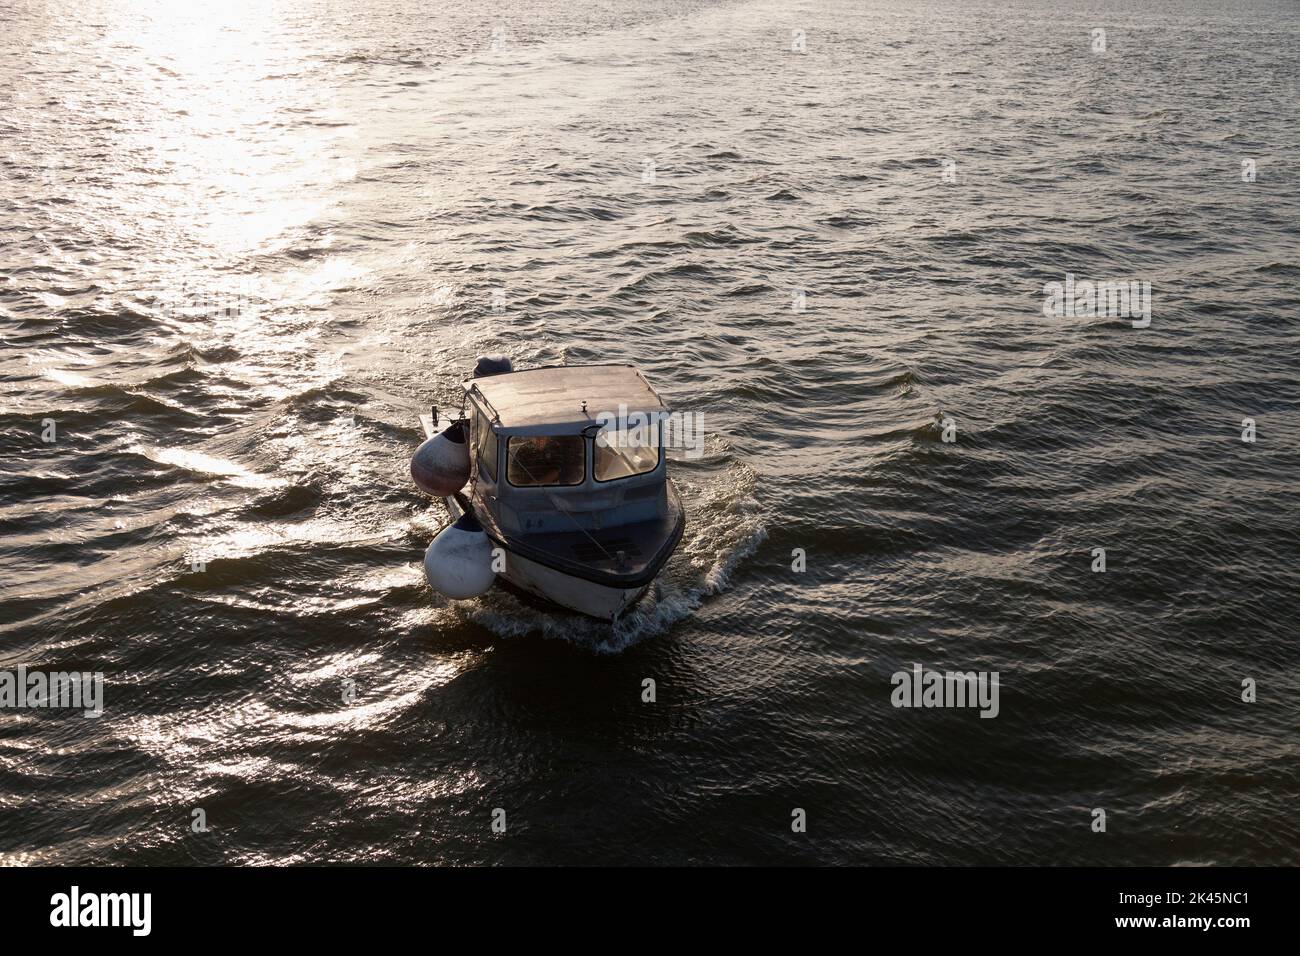 Un petit bateau de pêche sur la mer au coucher du soleil, vue en hauteur. Banque D'Images